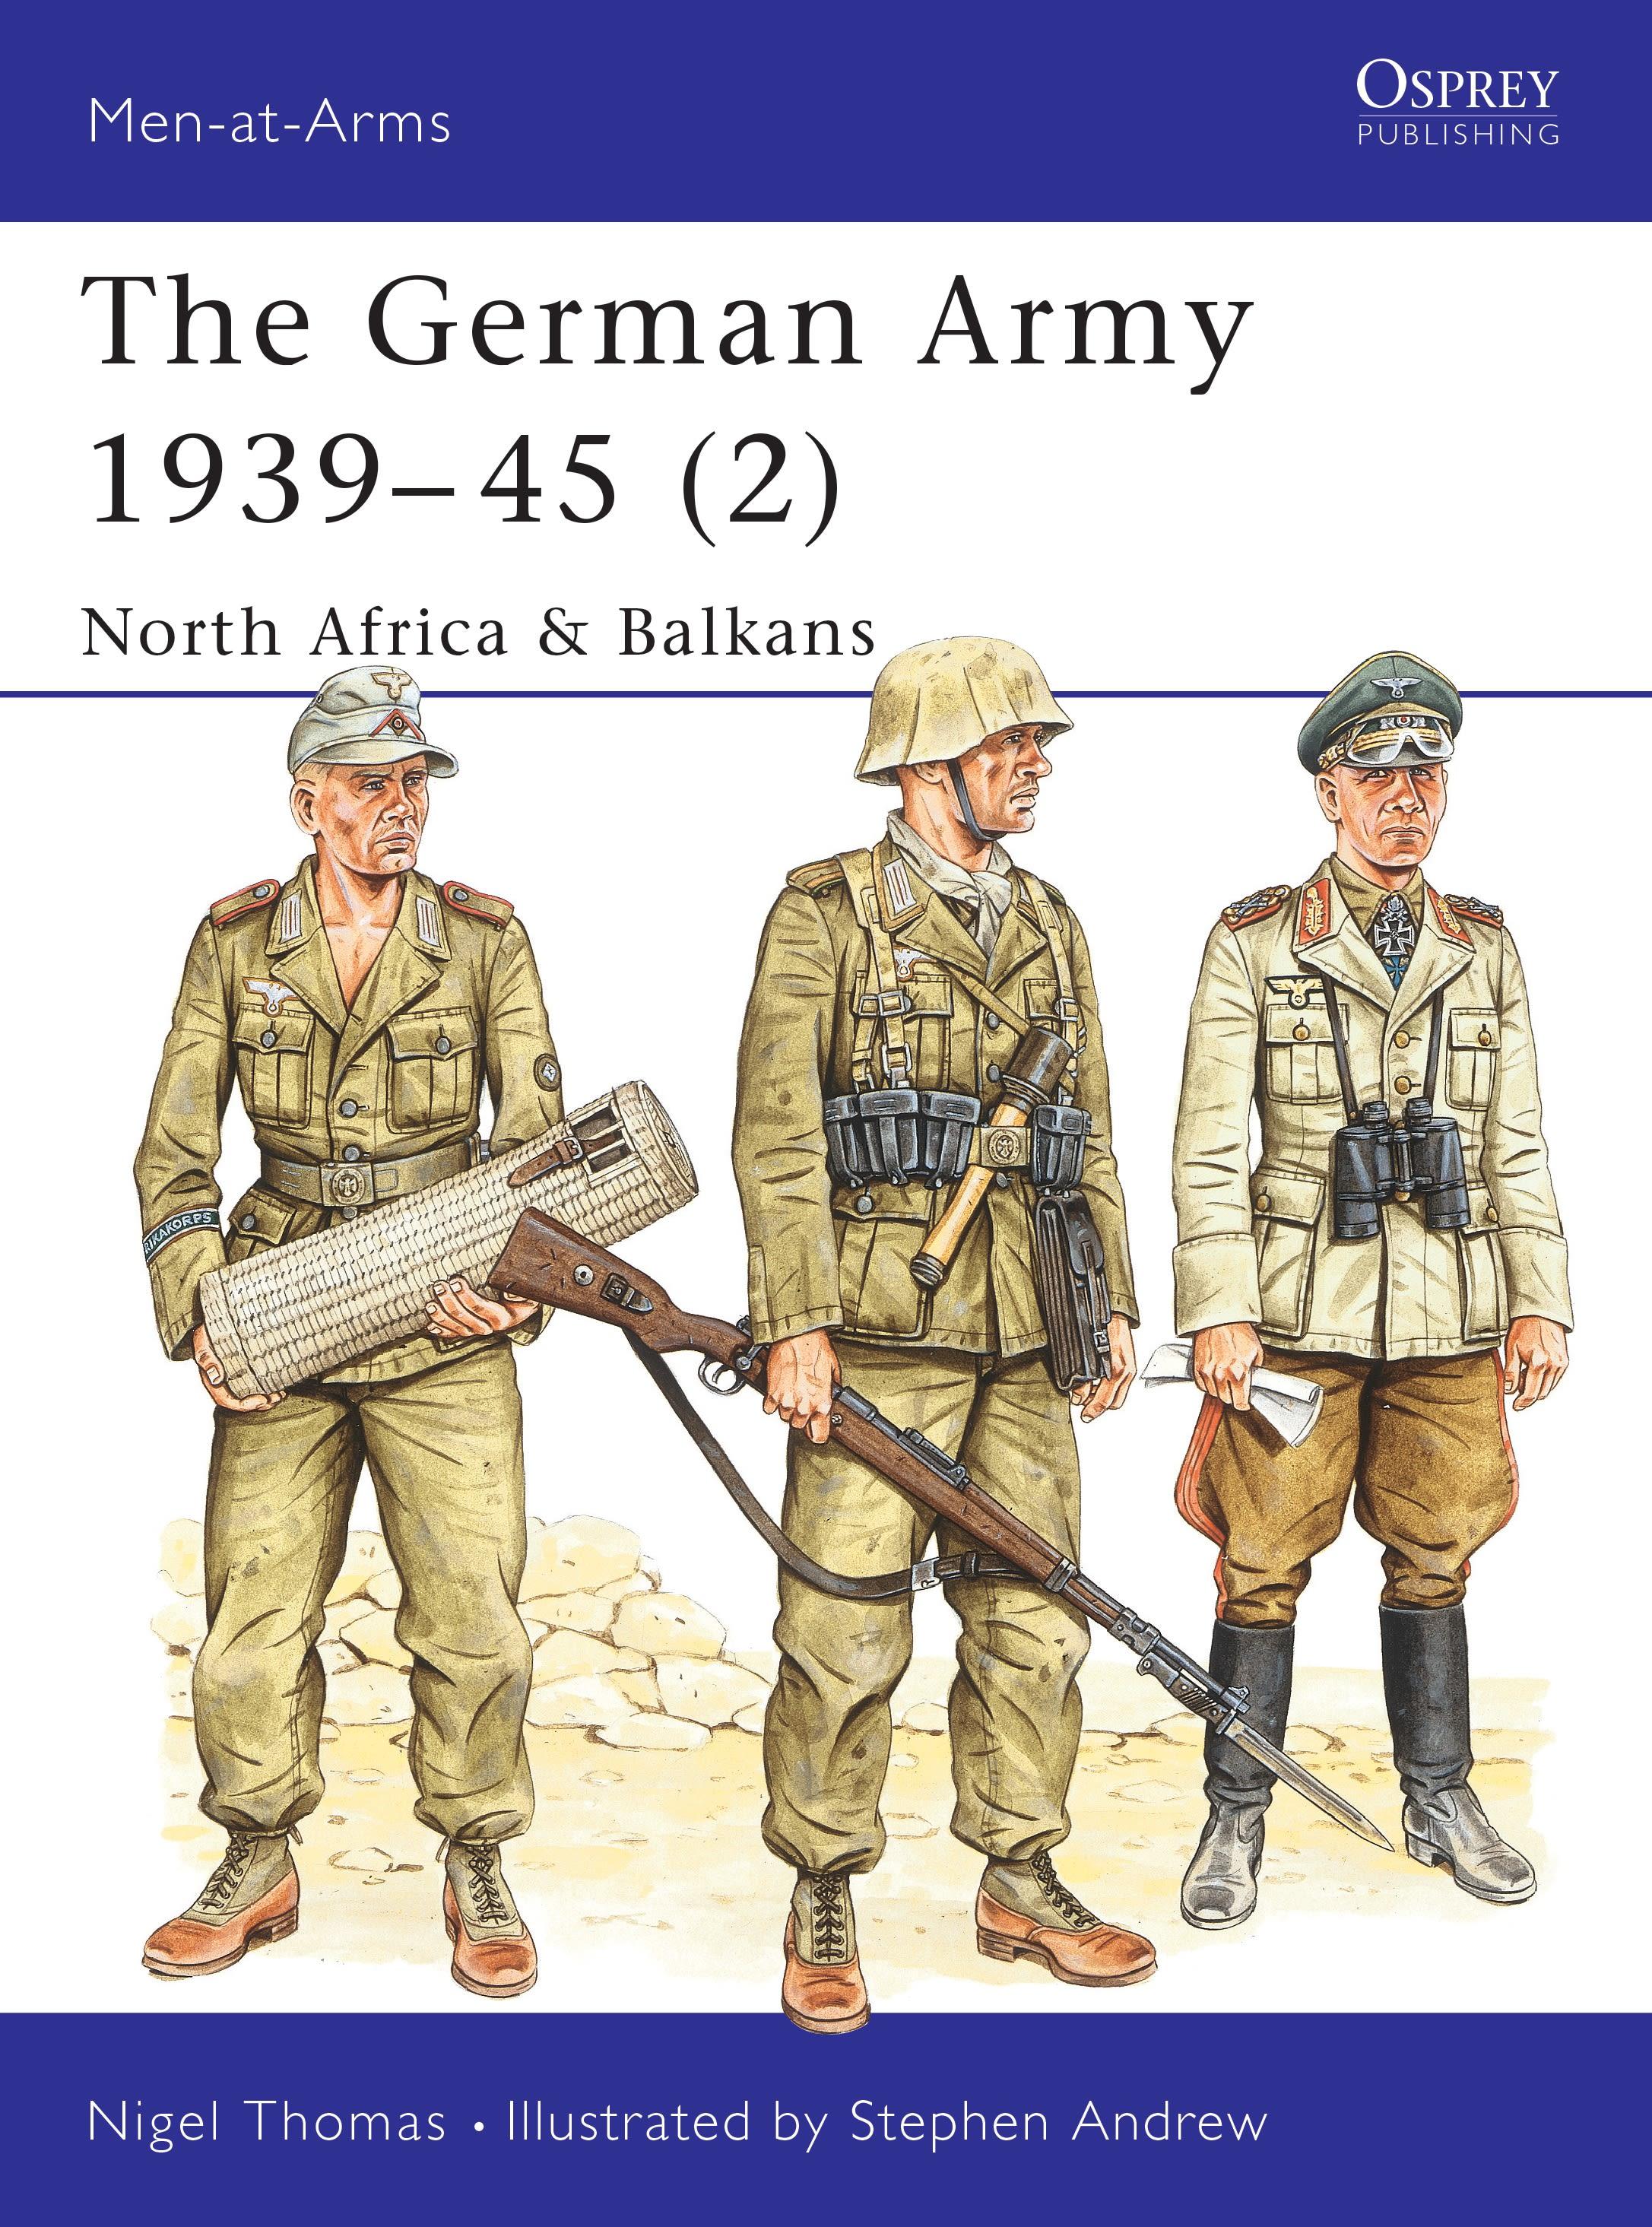 The German Army 1939-45 (2) / North Africa & Balkans / Nigel Thomas / Taschenbuch / Kartoniert / Broschiert / Englisch / 1998 / Bloomsbury USA / EAN 9781855326408 - Thomas, Nigel